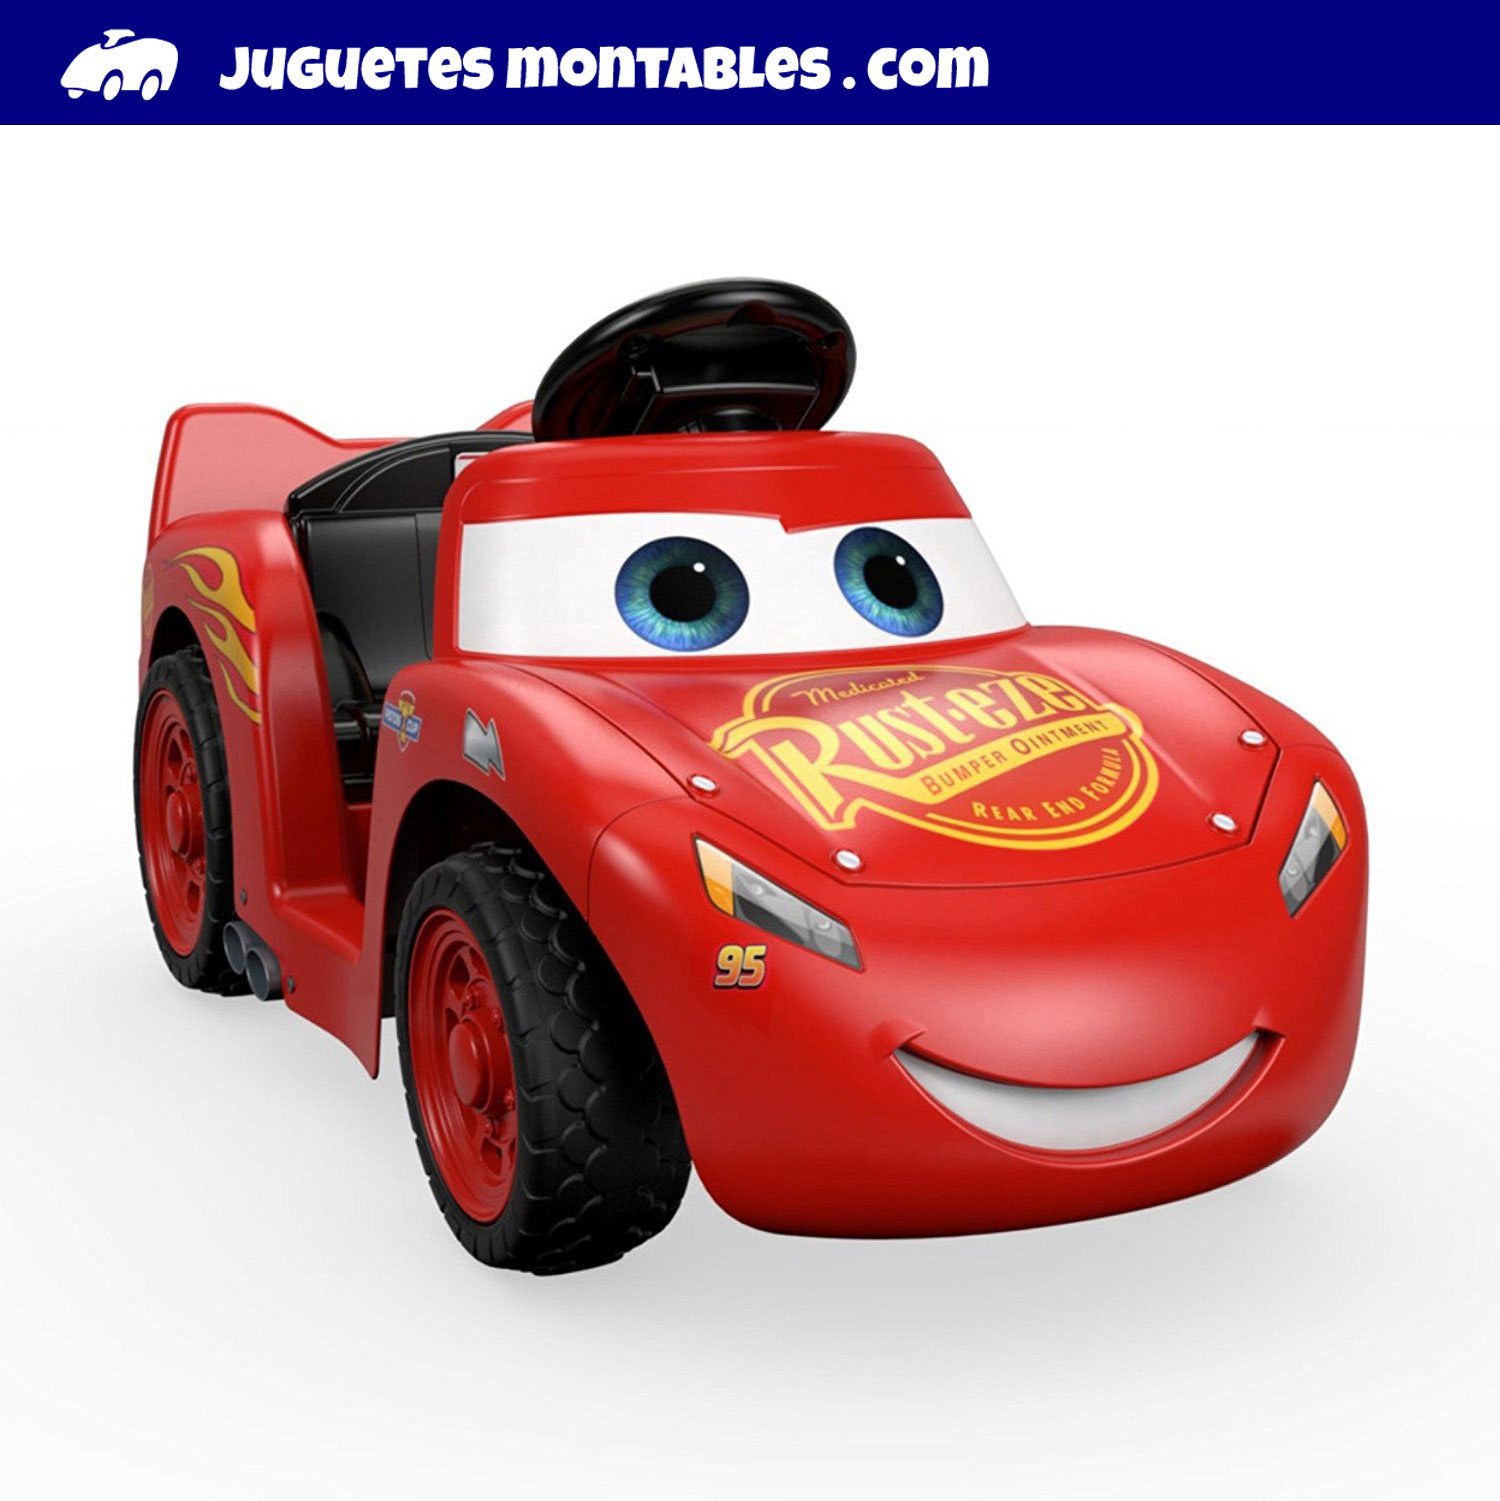 Juguetes Montables USA on Twitter: "CARS Carro Montable Infantil Juguete de Disney Pixar para (Amazon Estados ▻ https://t.co/S1nwhzUHoQ https://t.co/WxgCYEFcTG"